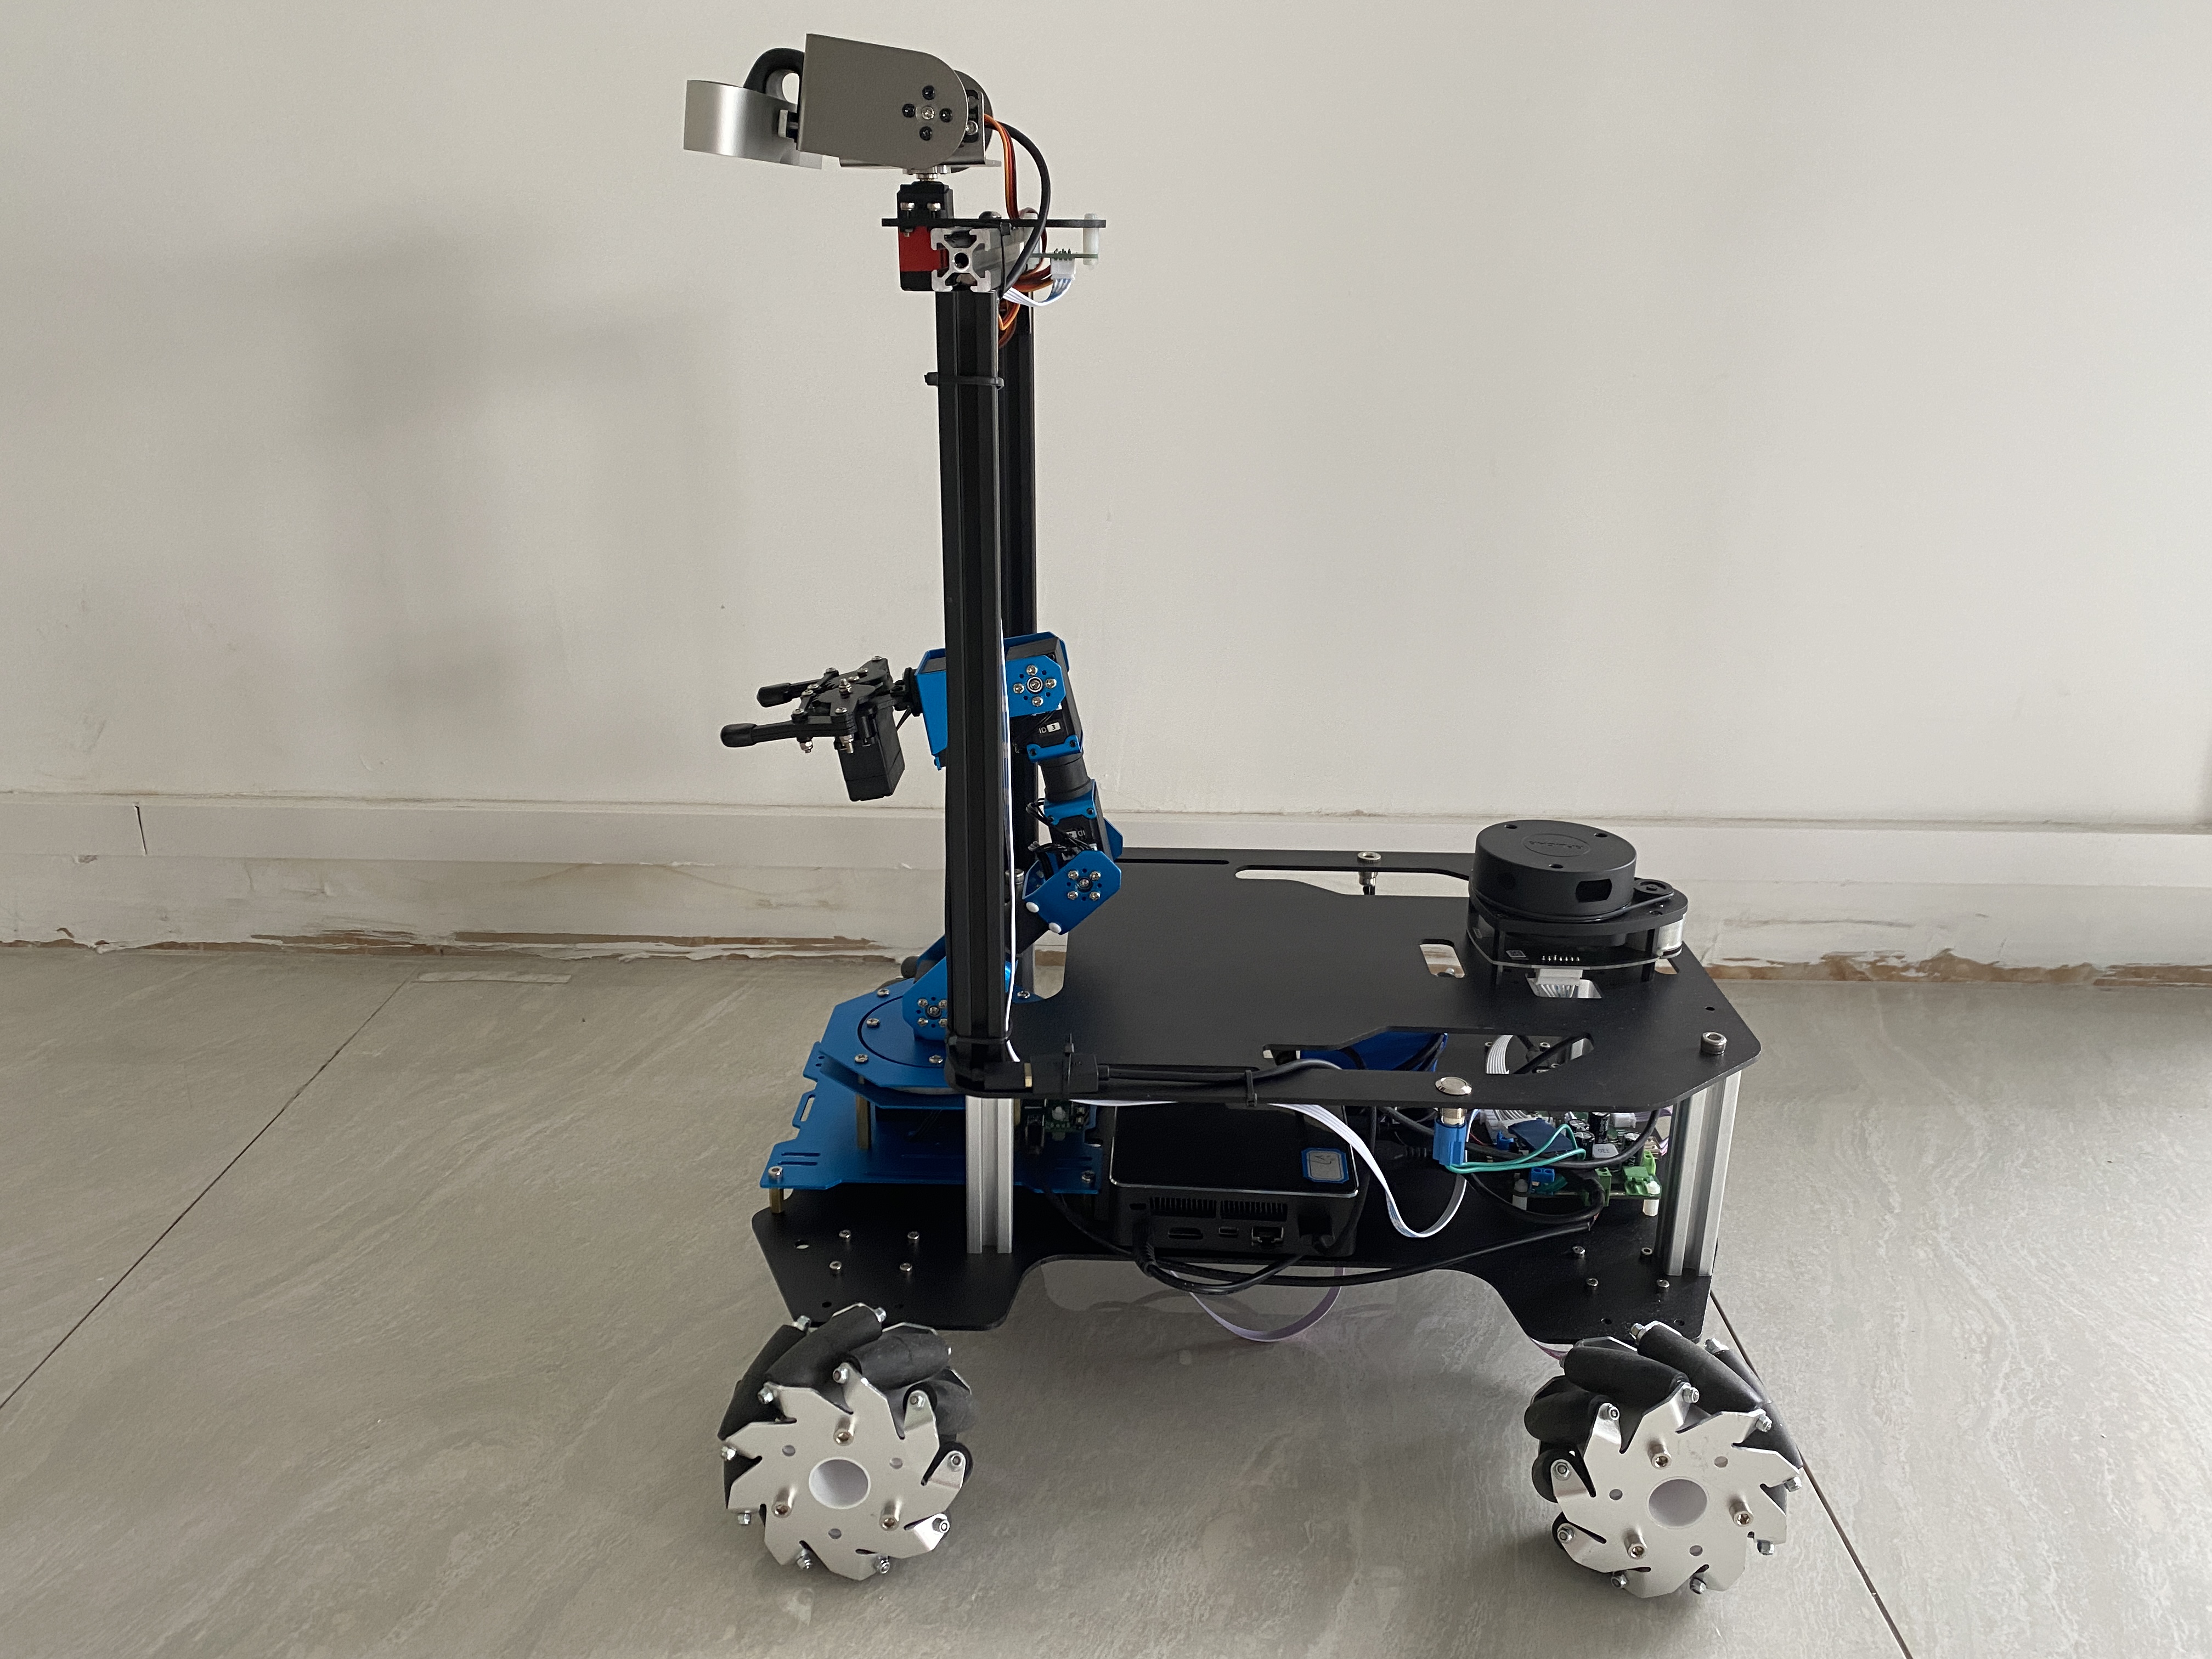 教学机器人  移动抓取机器人   智能小车  ROS机器人   机器人教学平台   ROS底盘